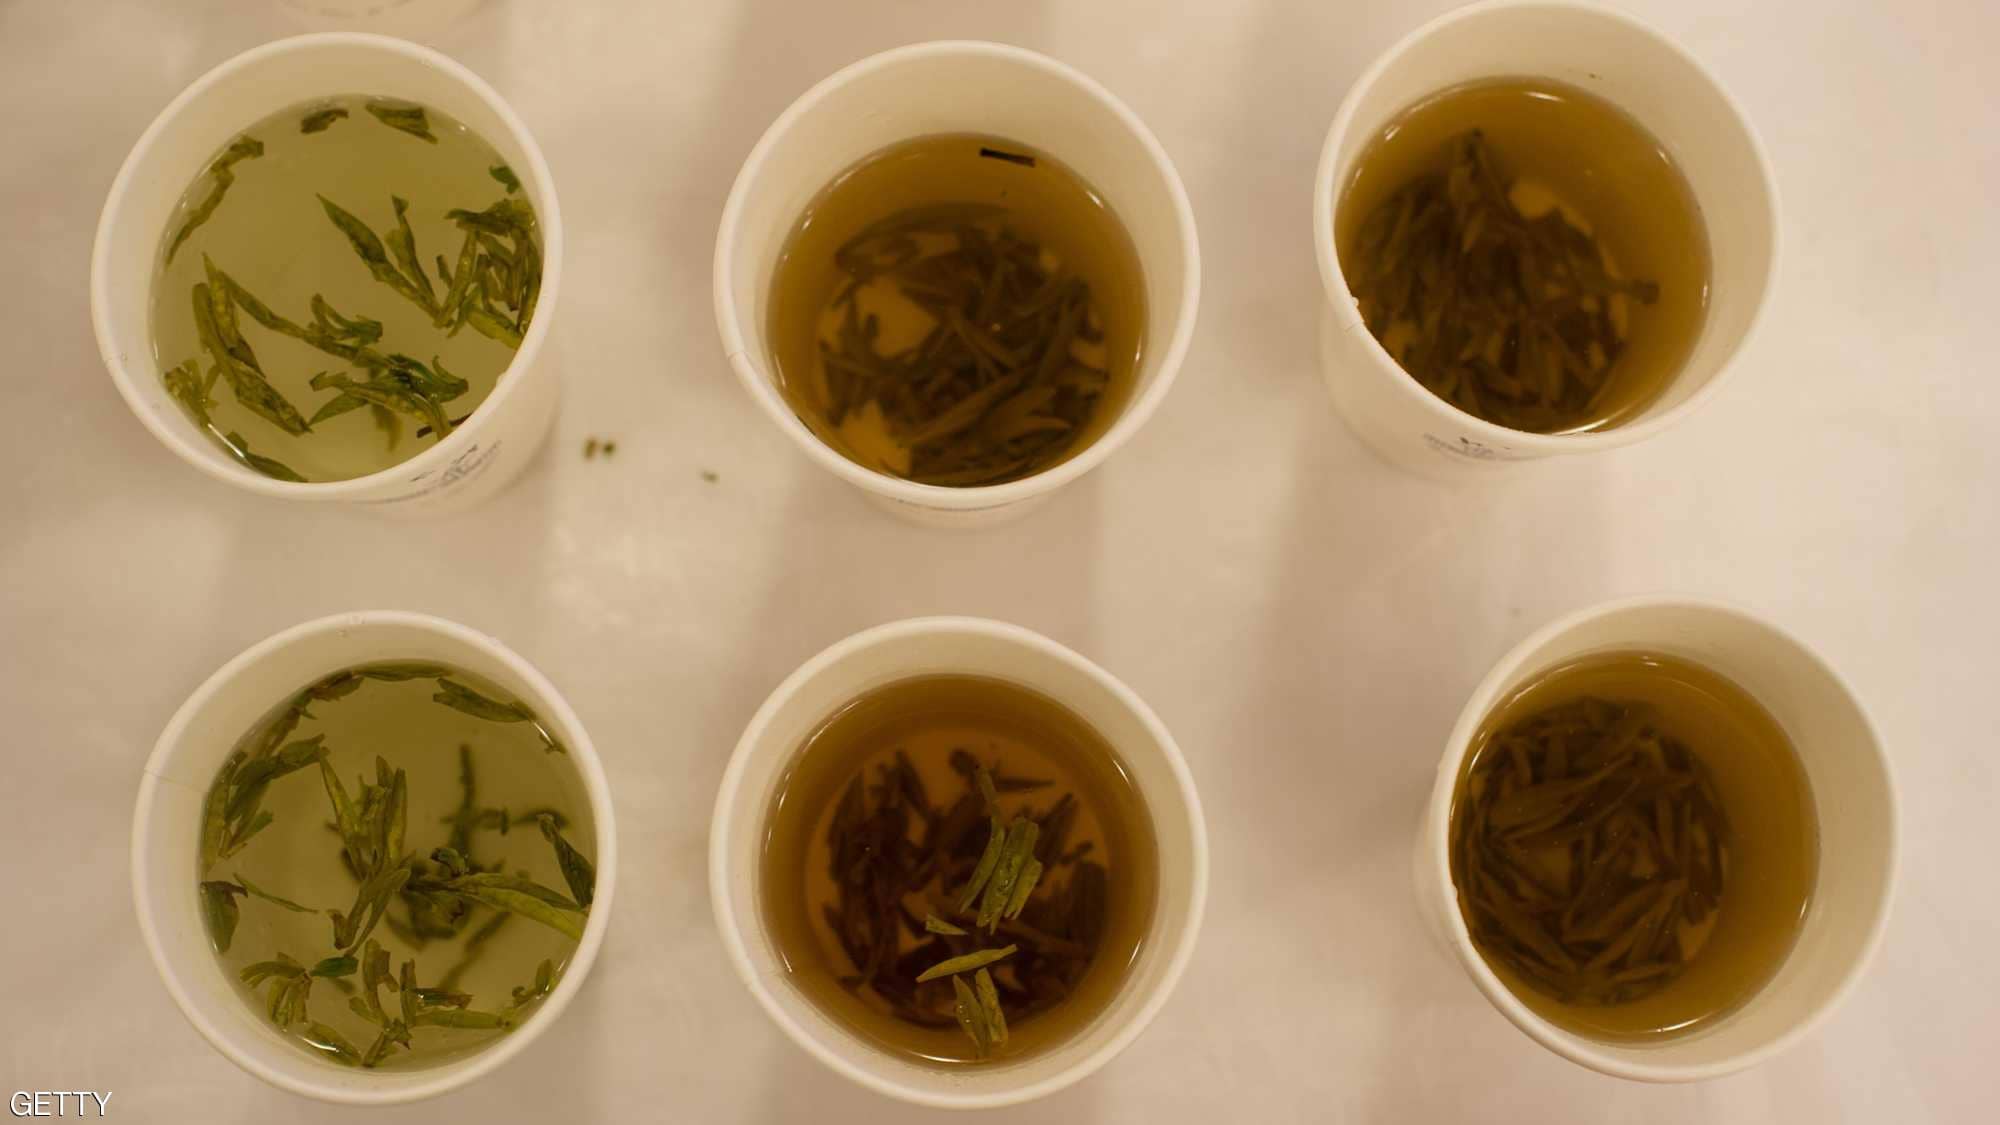   من فوائد الشاي الأخضر زيادة قدرة الجسم على حرق الدهون